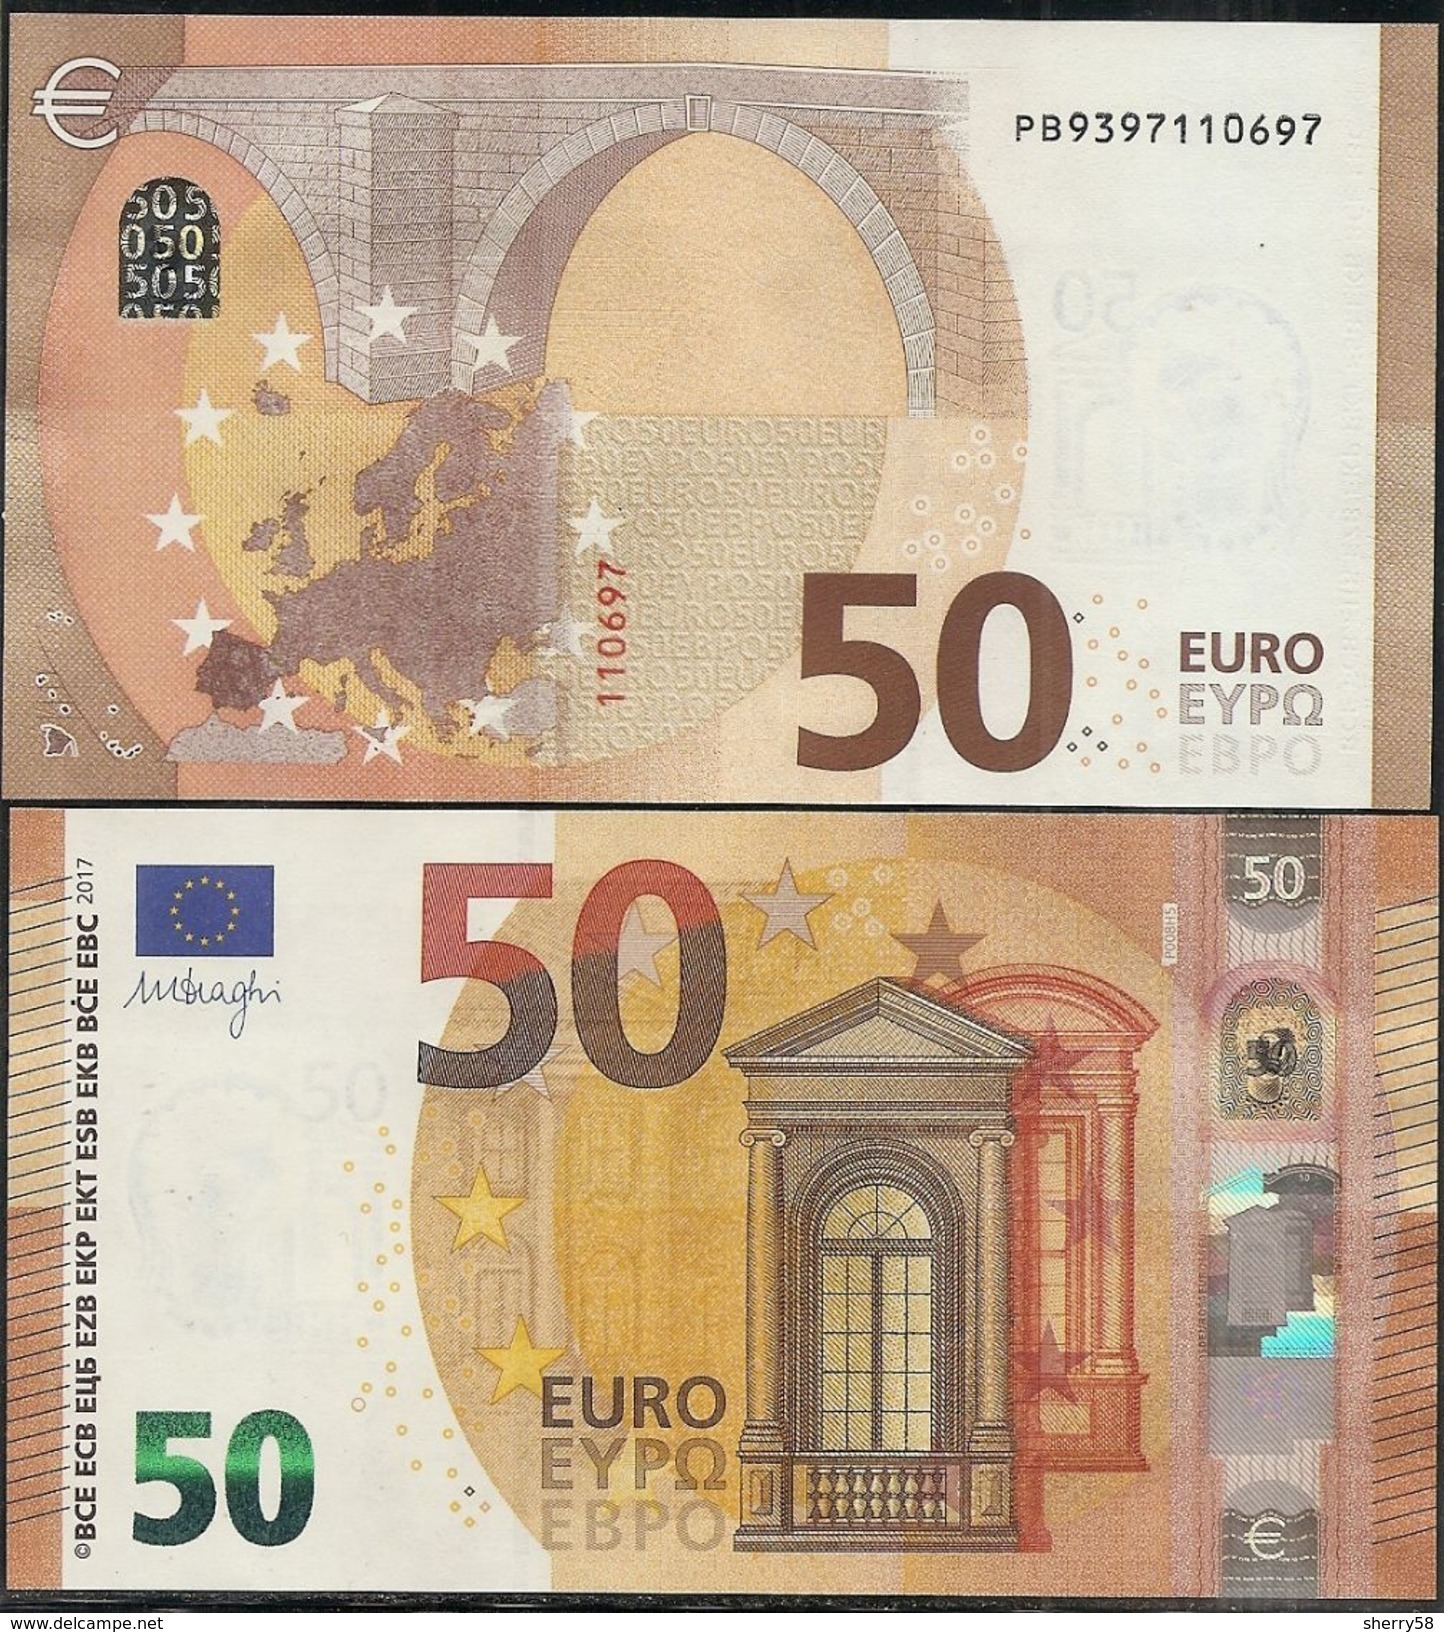 2017-NUEVO BILLETE DE 50 EUROS-SIN CIRCULAR-P008H5- - 50 Euro